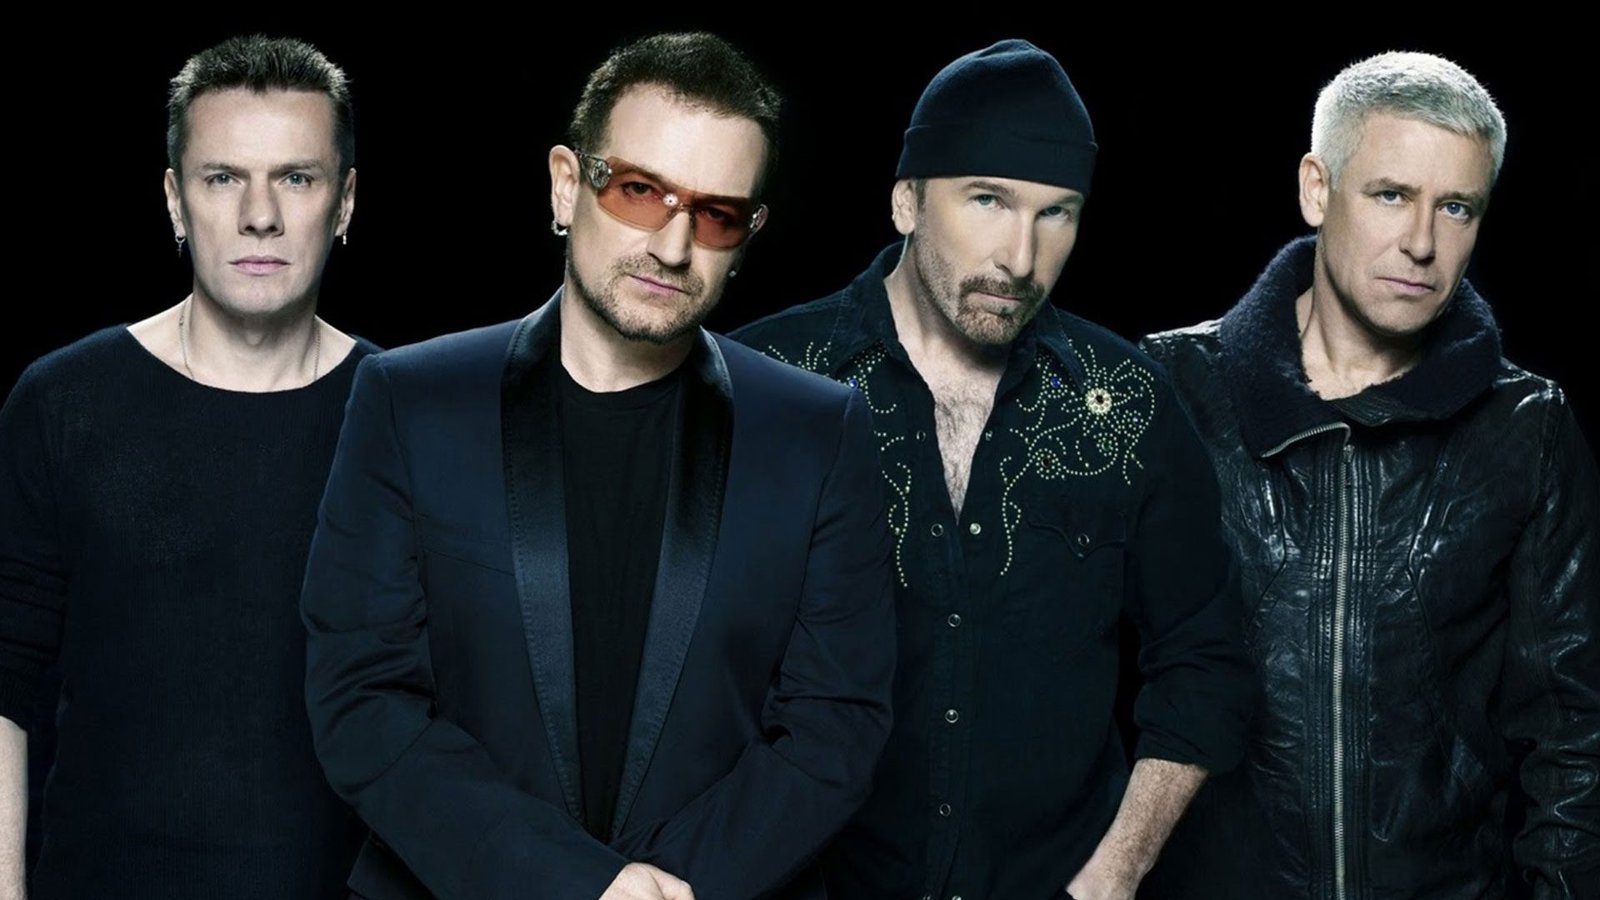 Nueva edición del disco All That You Can´t Leave Behind de U2